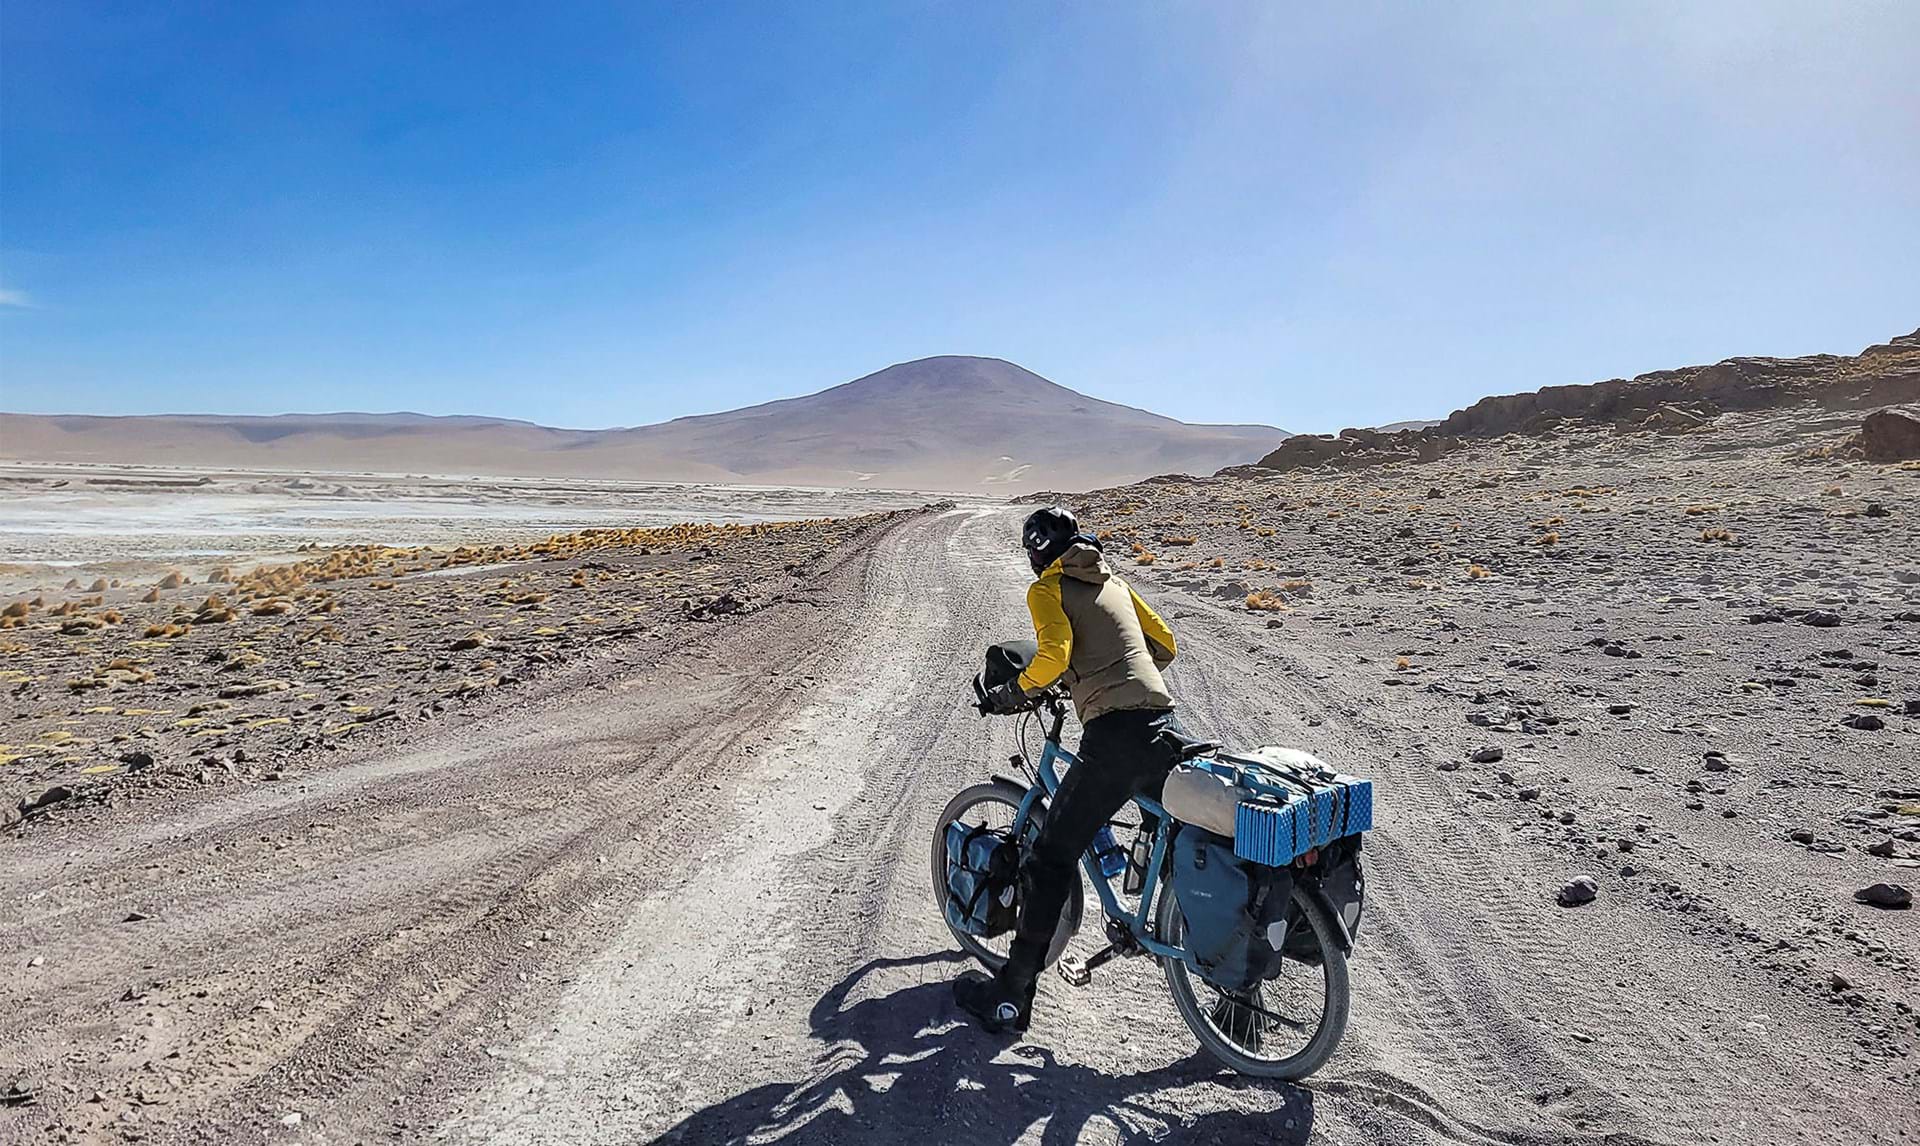 Dansk par rejser fra Argentina Canada på cykel: ”Vi glæder ikke som sådan til at komme hjem” - Euroman